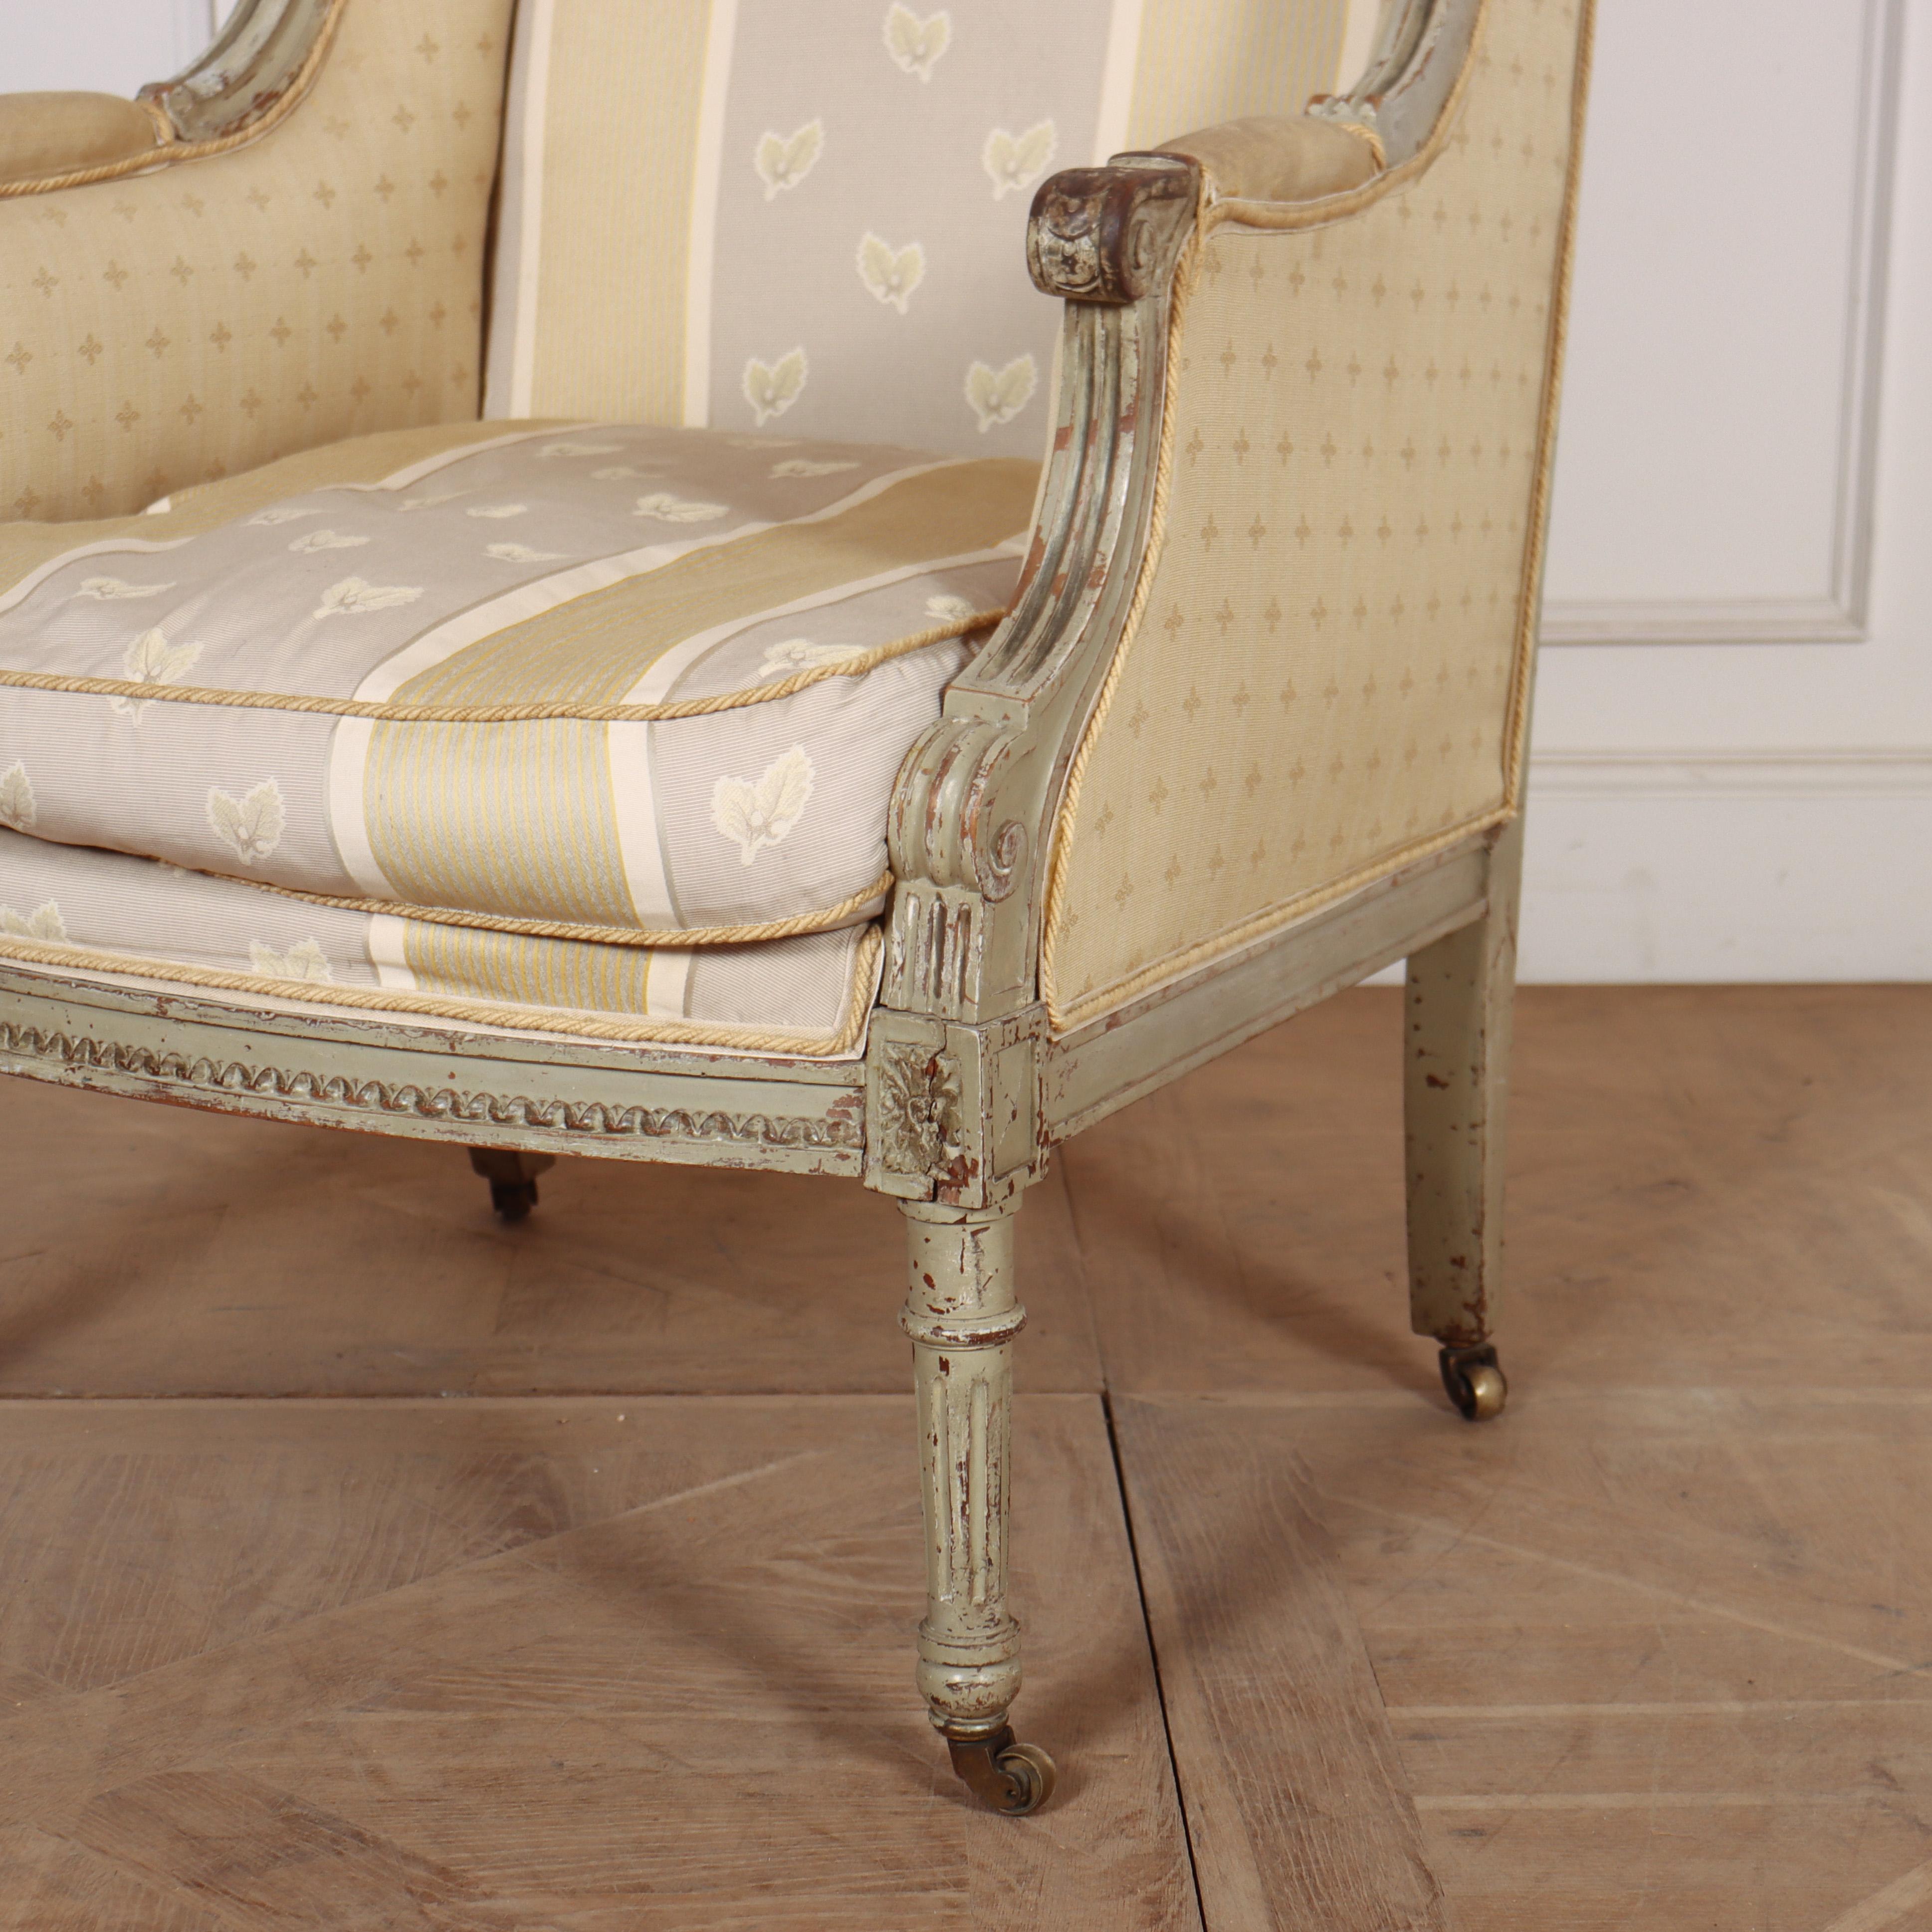 Französischer Sessel im Directoire-Stil des 19. Jahrhunderts. 1880.

Sitz ist 22